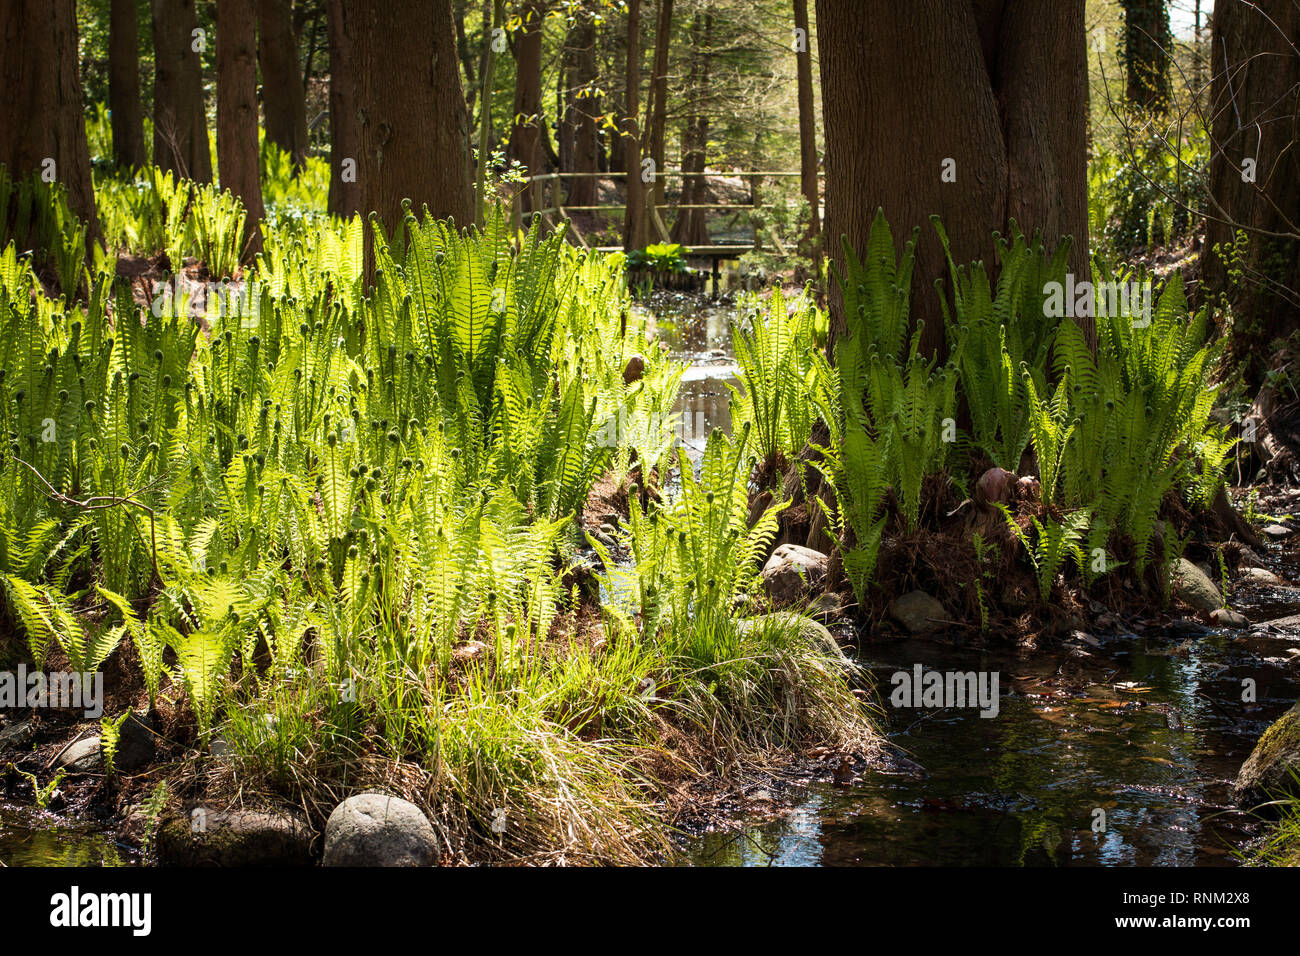 Ostrich Plume, helecho helecho avestruz (Matteuccia struthiopteris). Las plantas en un arroyo en el bosque en primavera. Alemania Foto de stock